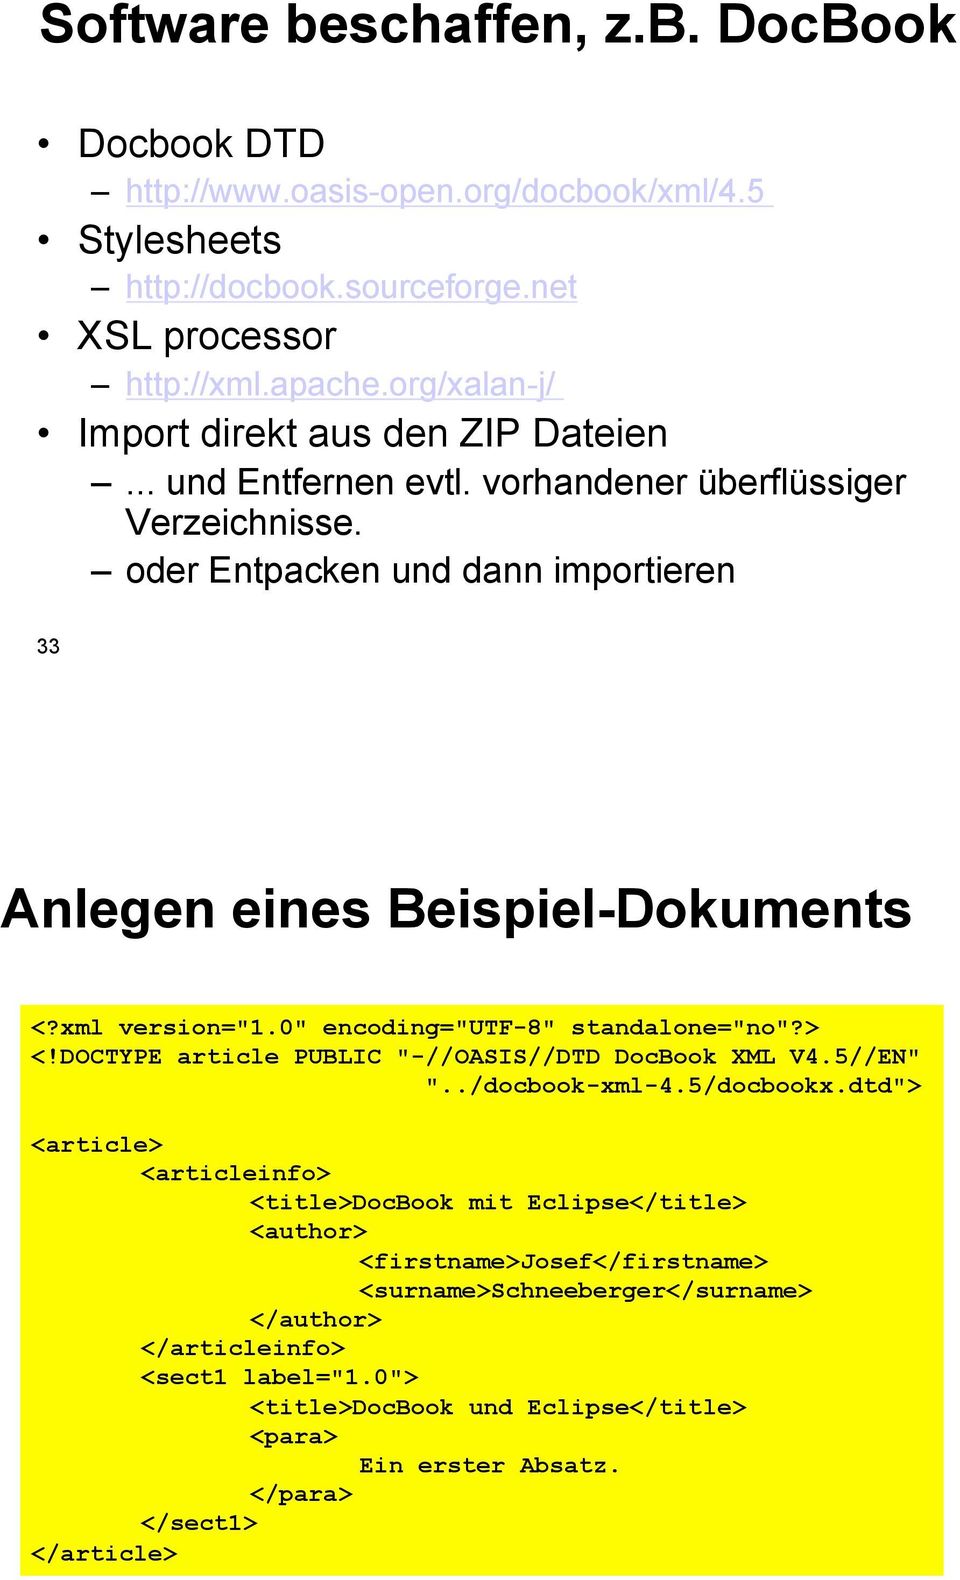 xml version="1.0" encoding="utf-8" standalone="no"?> <!DOCTYPE article PUBLIC "-//OASIS//DTD DocBook XML V4.5//EN" "../docbook-xml-4.5/docbookx.